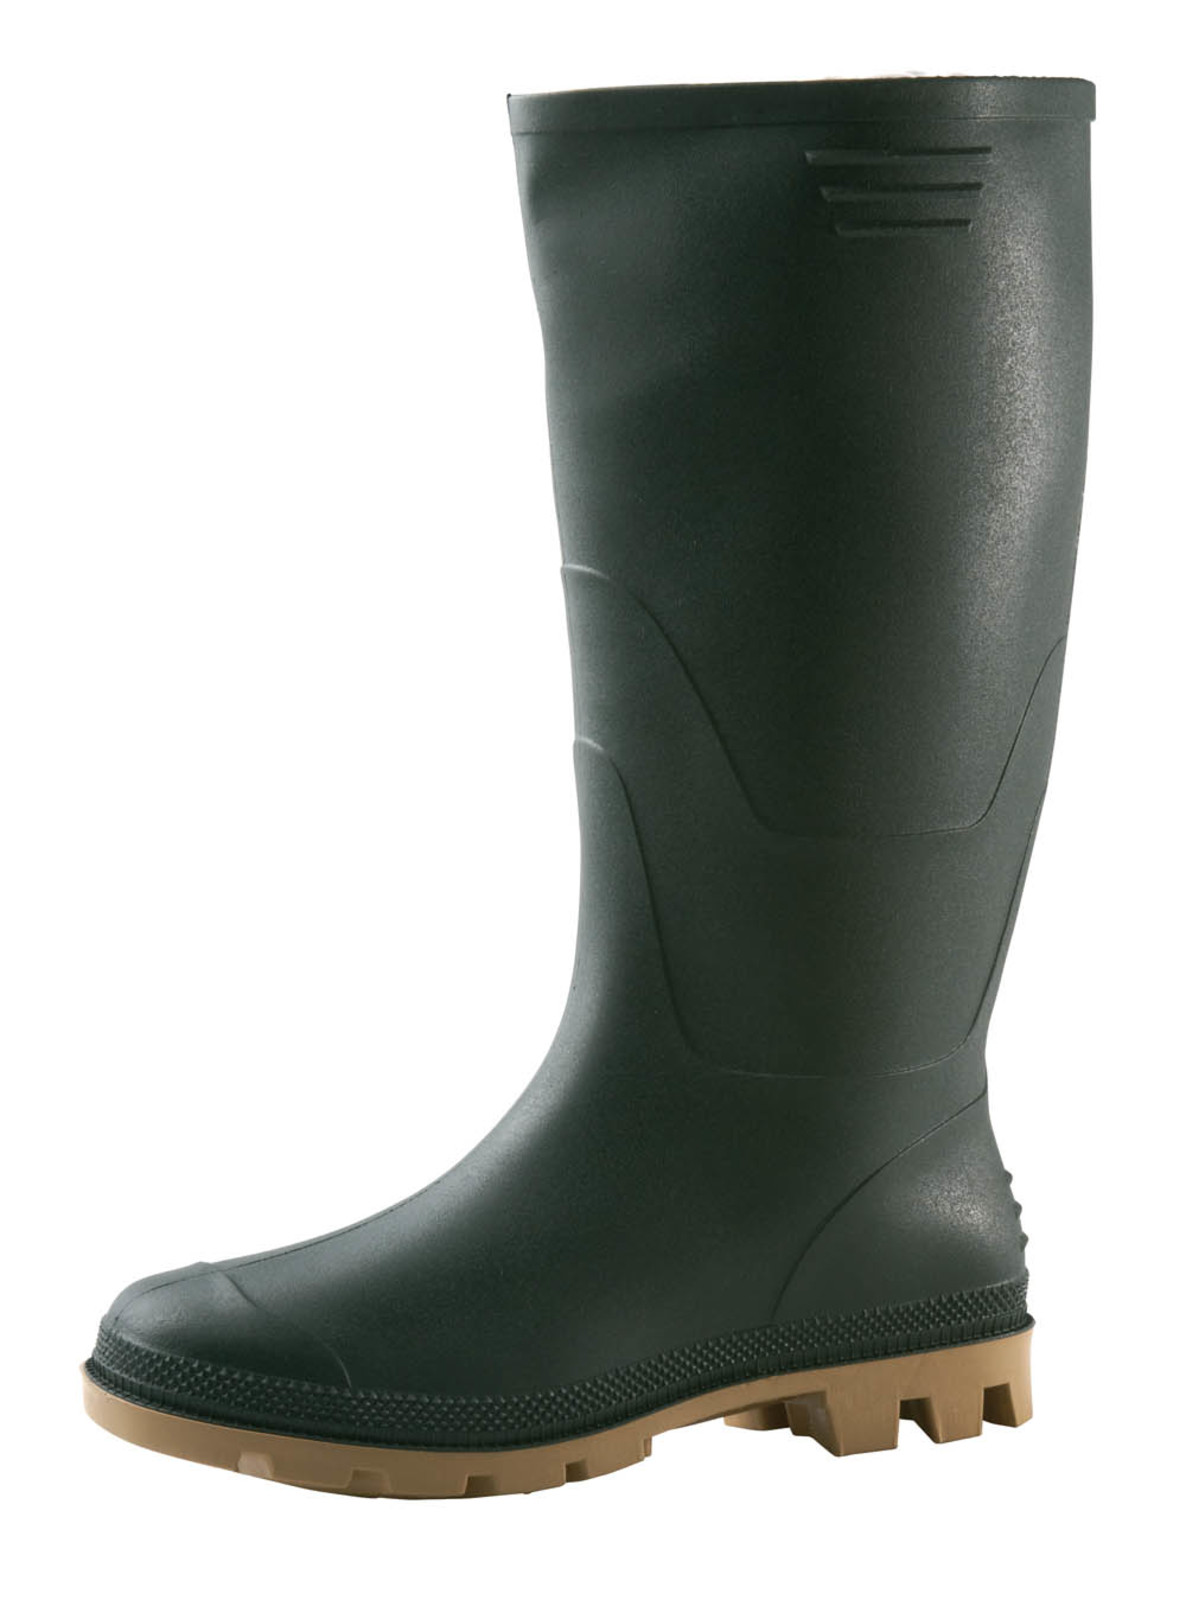 Gumáky Boots Ginocchio PVC - veľkosť: 43, farba: zelená